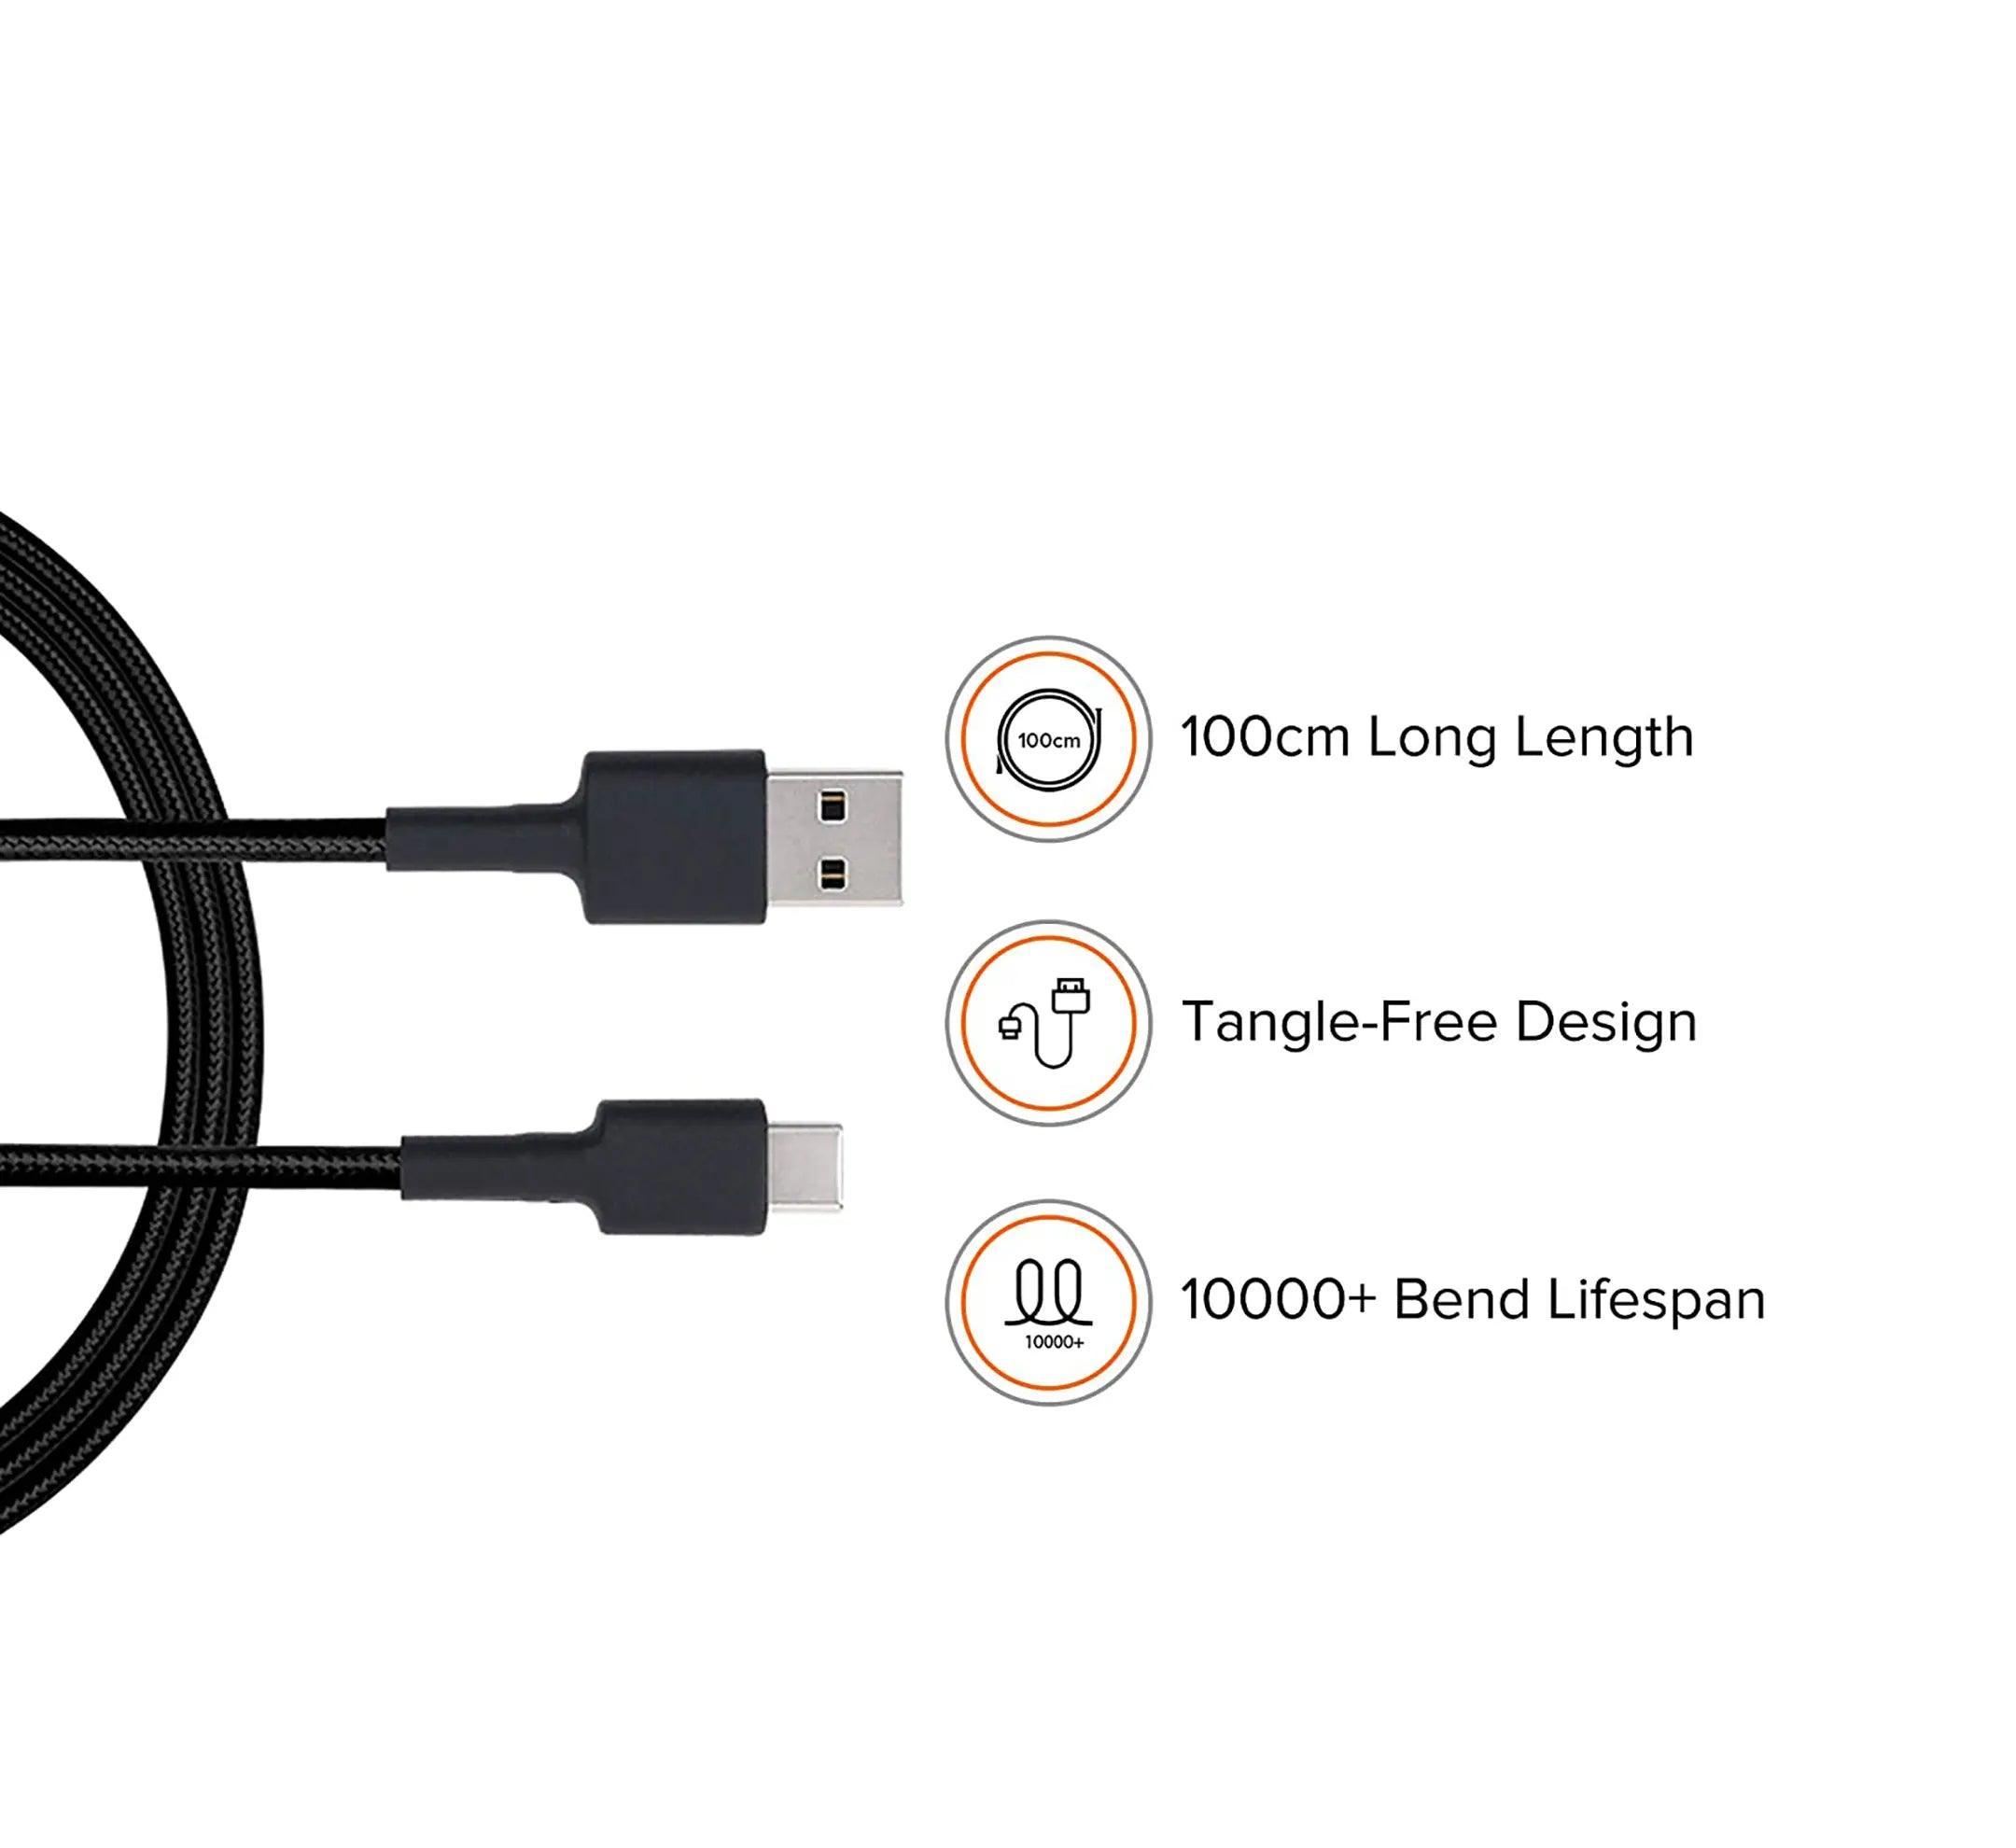 Mi Braided USB Type-C Cable 100cm (Black) - Brightex Retail UK